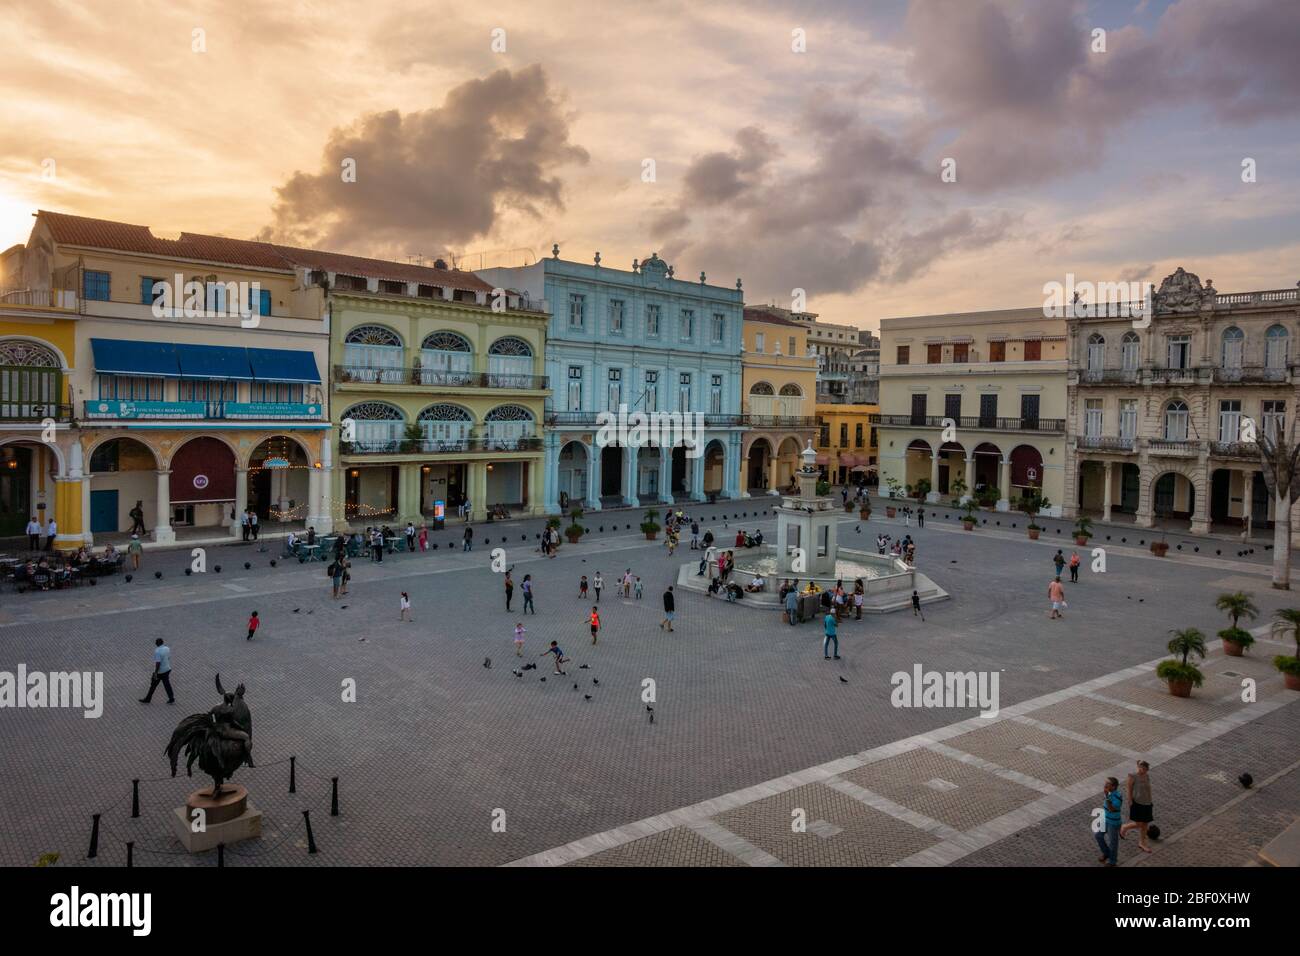 Le soir, le soleil se couche sur la Plaza Vieja dans la vieille ville de la Havane, Cuba Banque D'Images